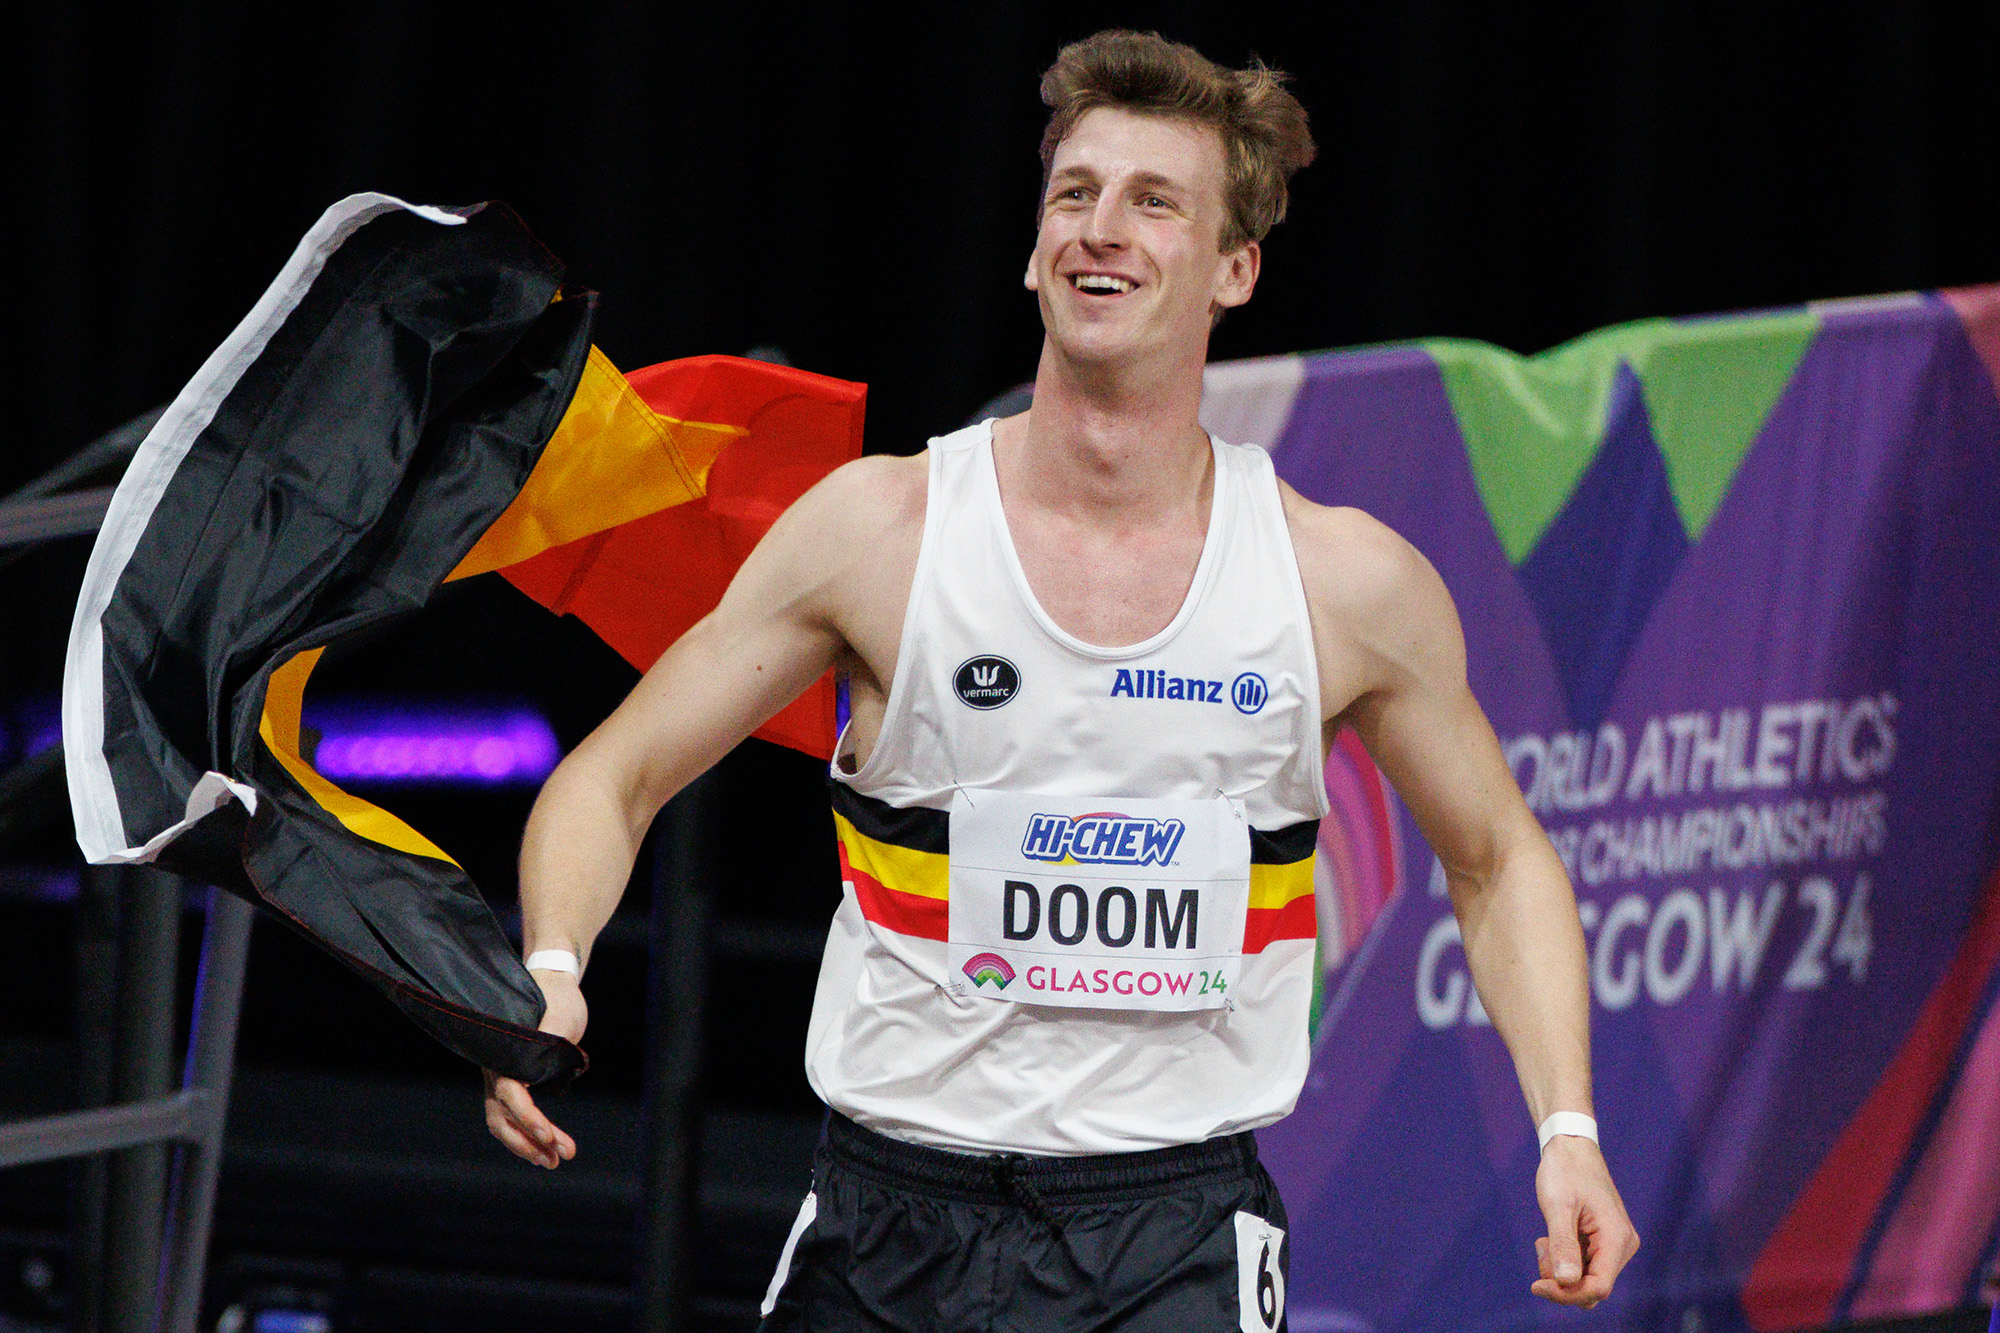 Gold für Alexander Doom bei den Leichtathletik-Hallenweltmeisterschaften (Bild: Benoit Doppagne/Belga)